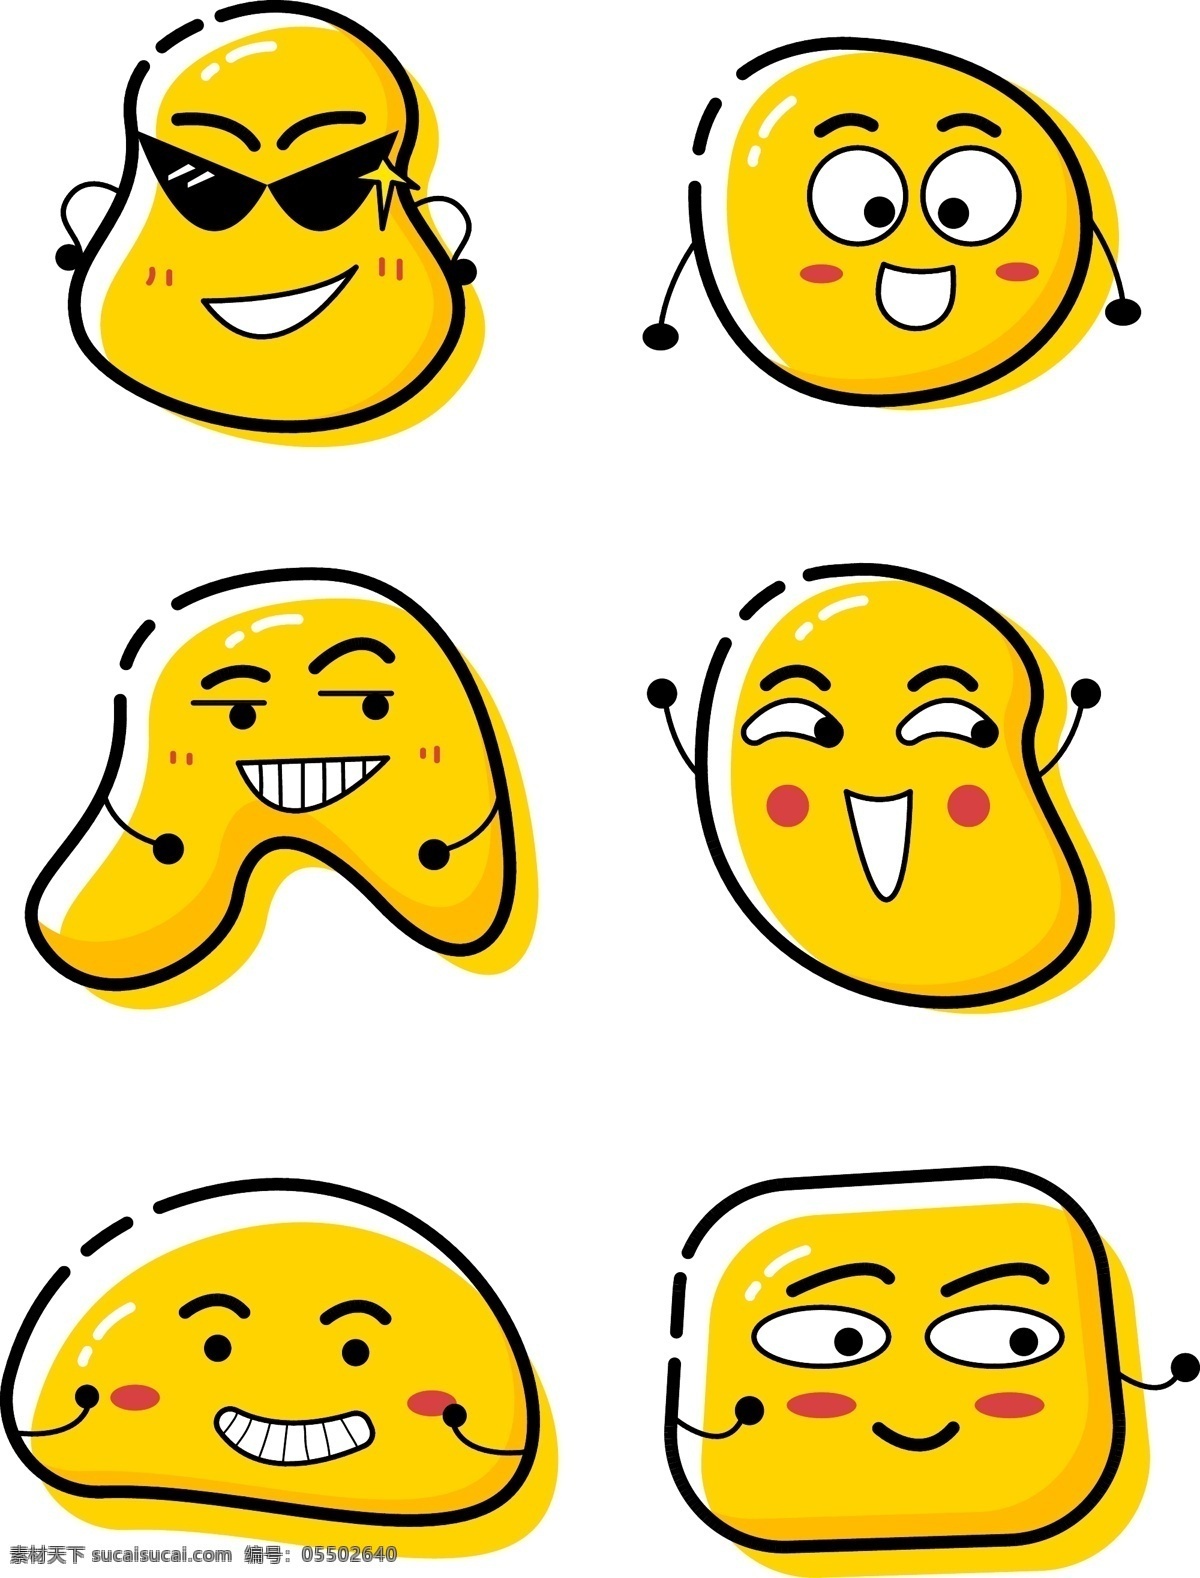 创意 变种 emoji 笑脸 卡通 mbe 风格 元素 表情包 矢量 可爱